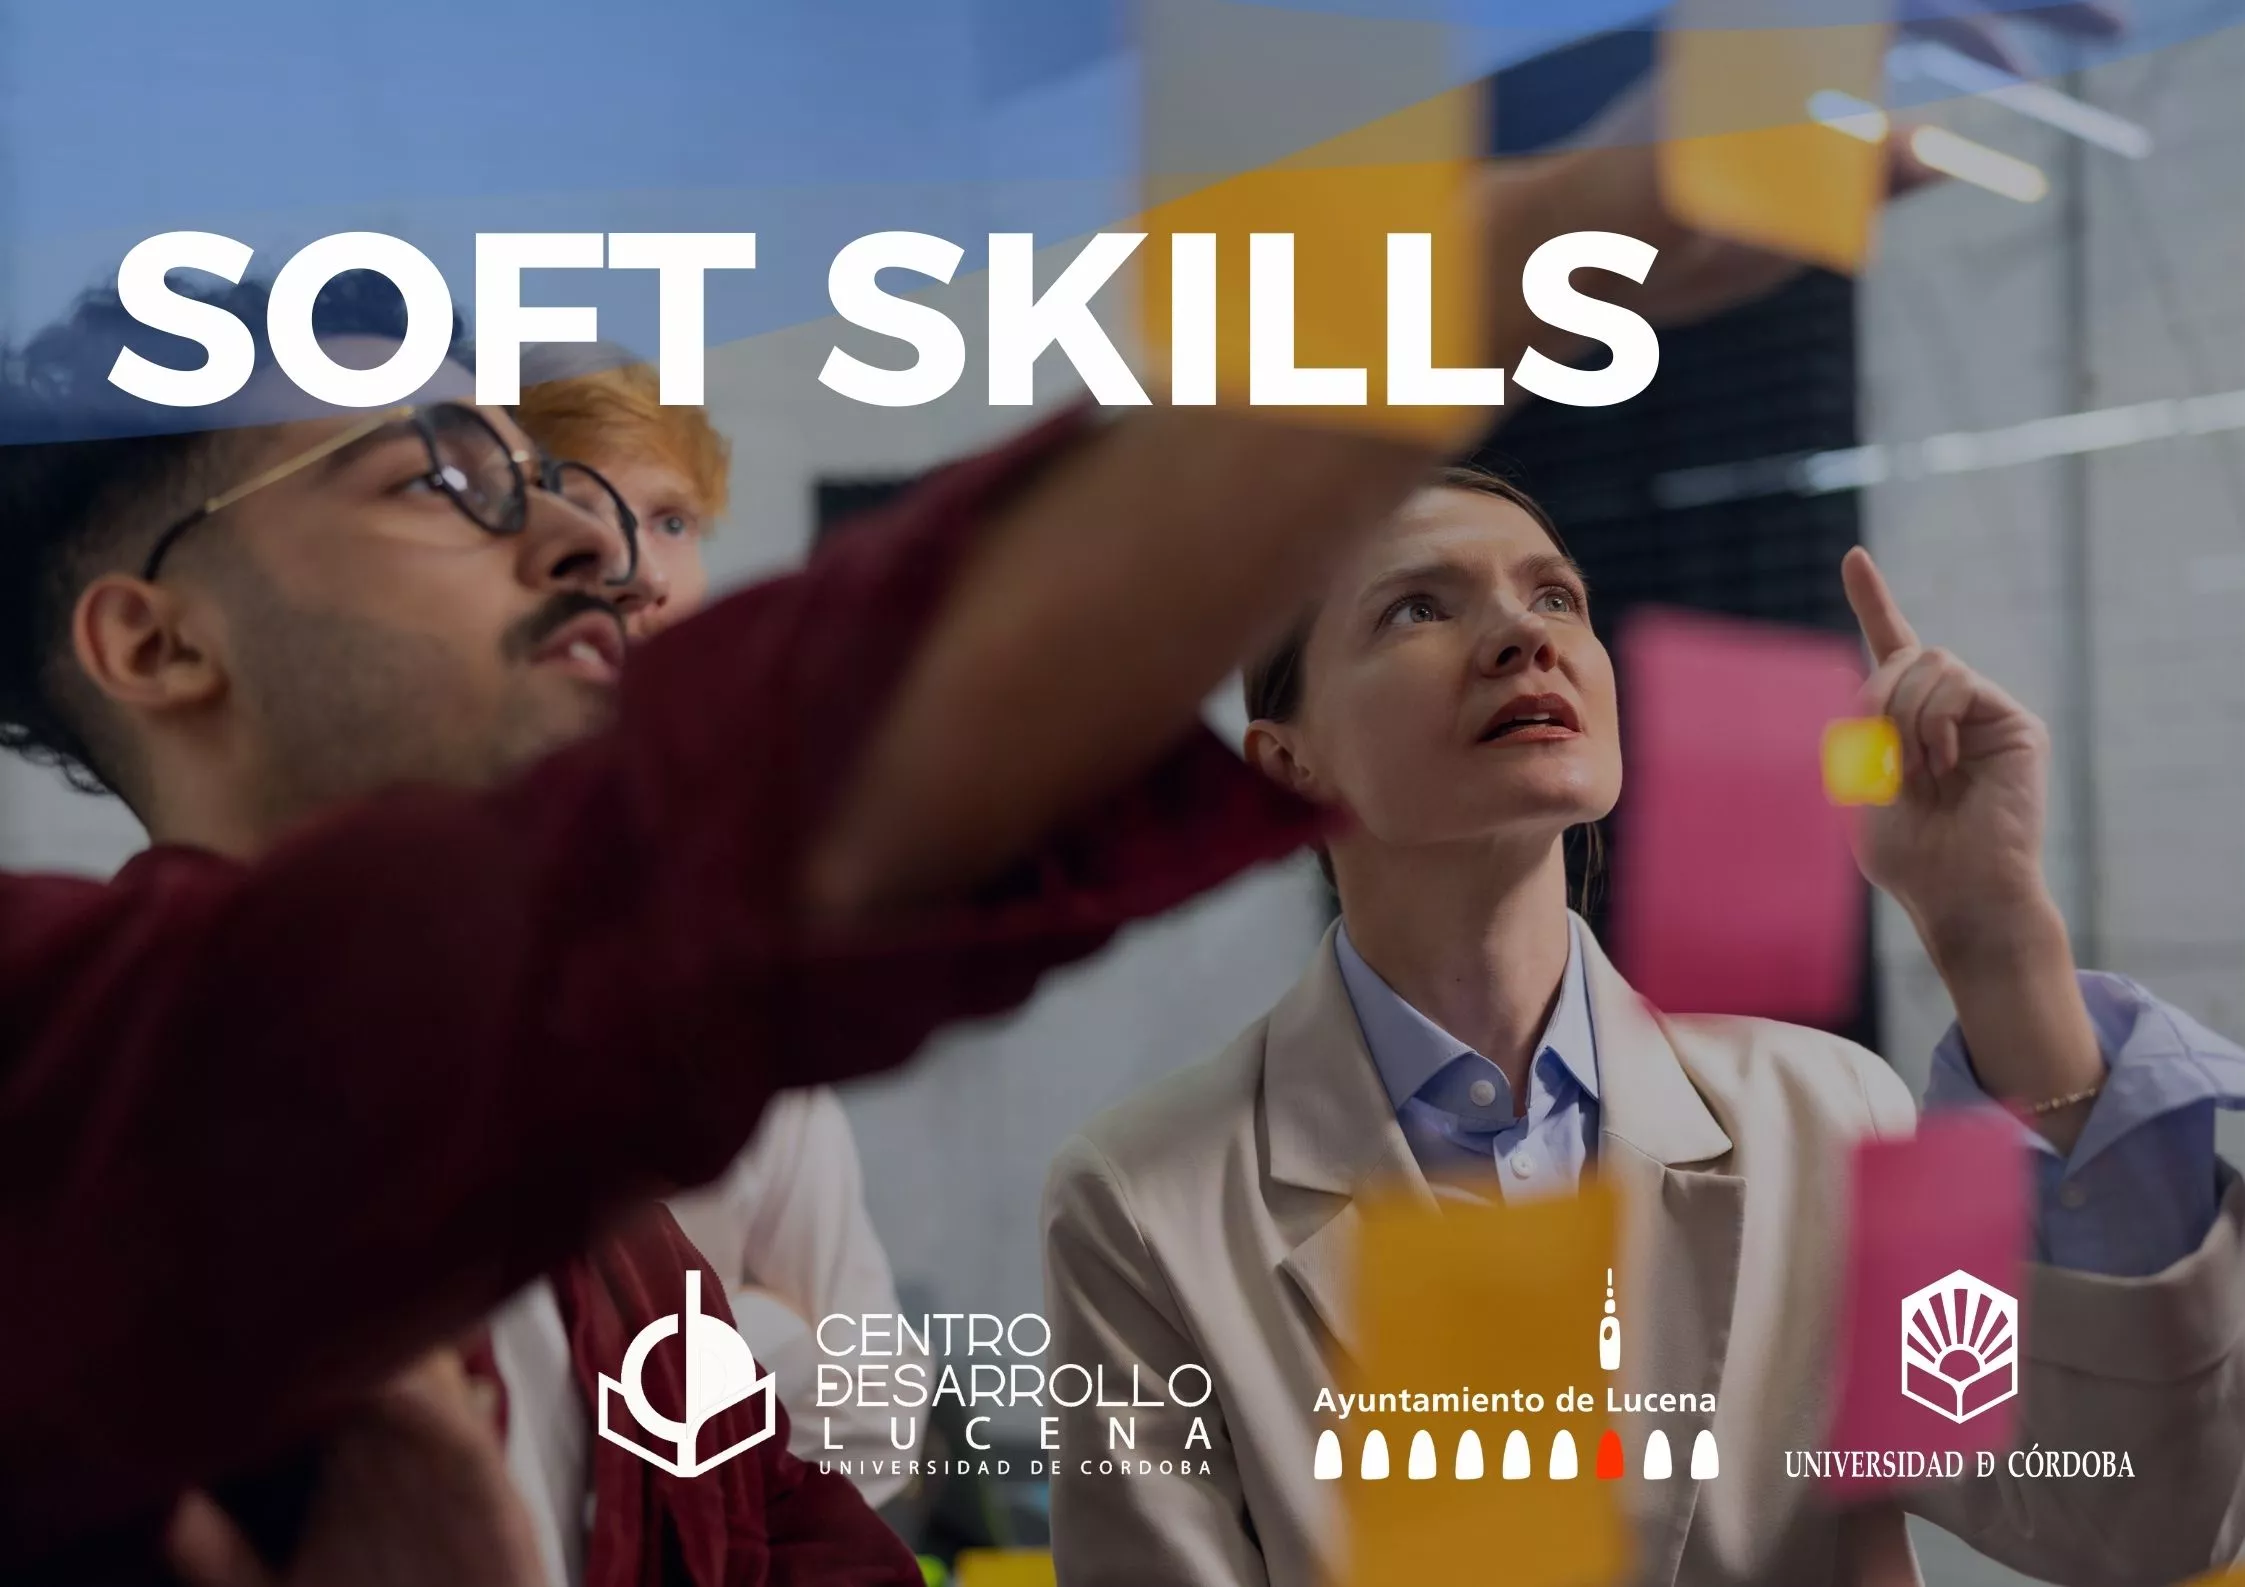 Cartel anunciador del curso "Soft Skills"